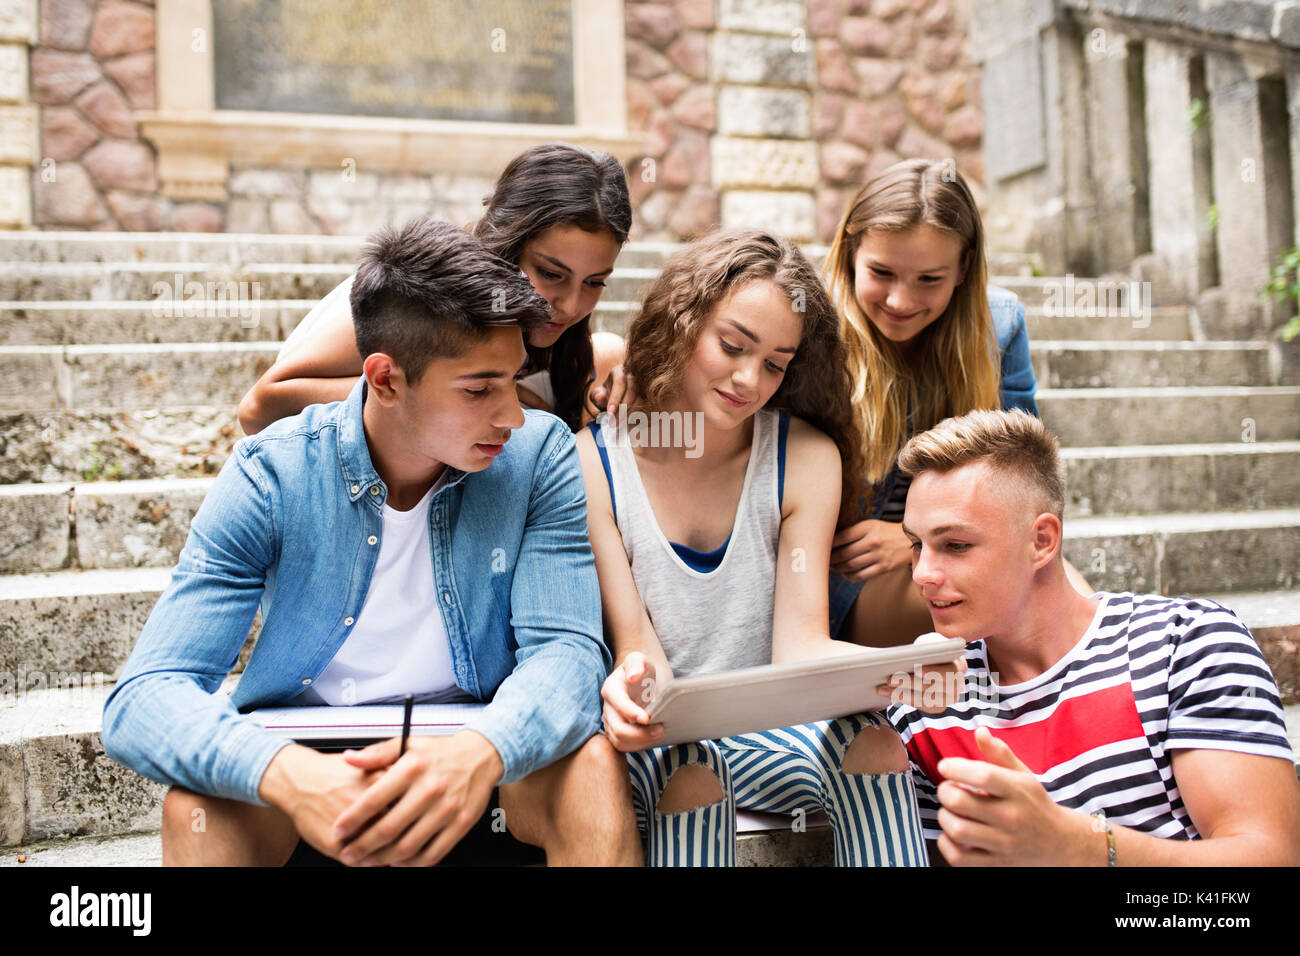 Los estudiantes adolescentes con tablet sentado en escalones de piedra. Foto de stock